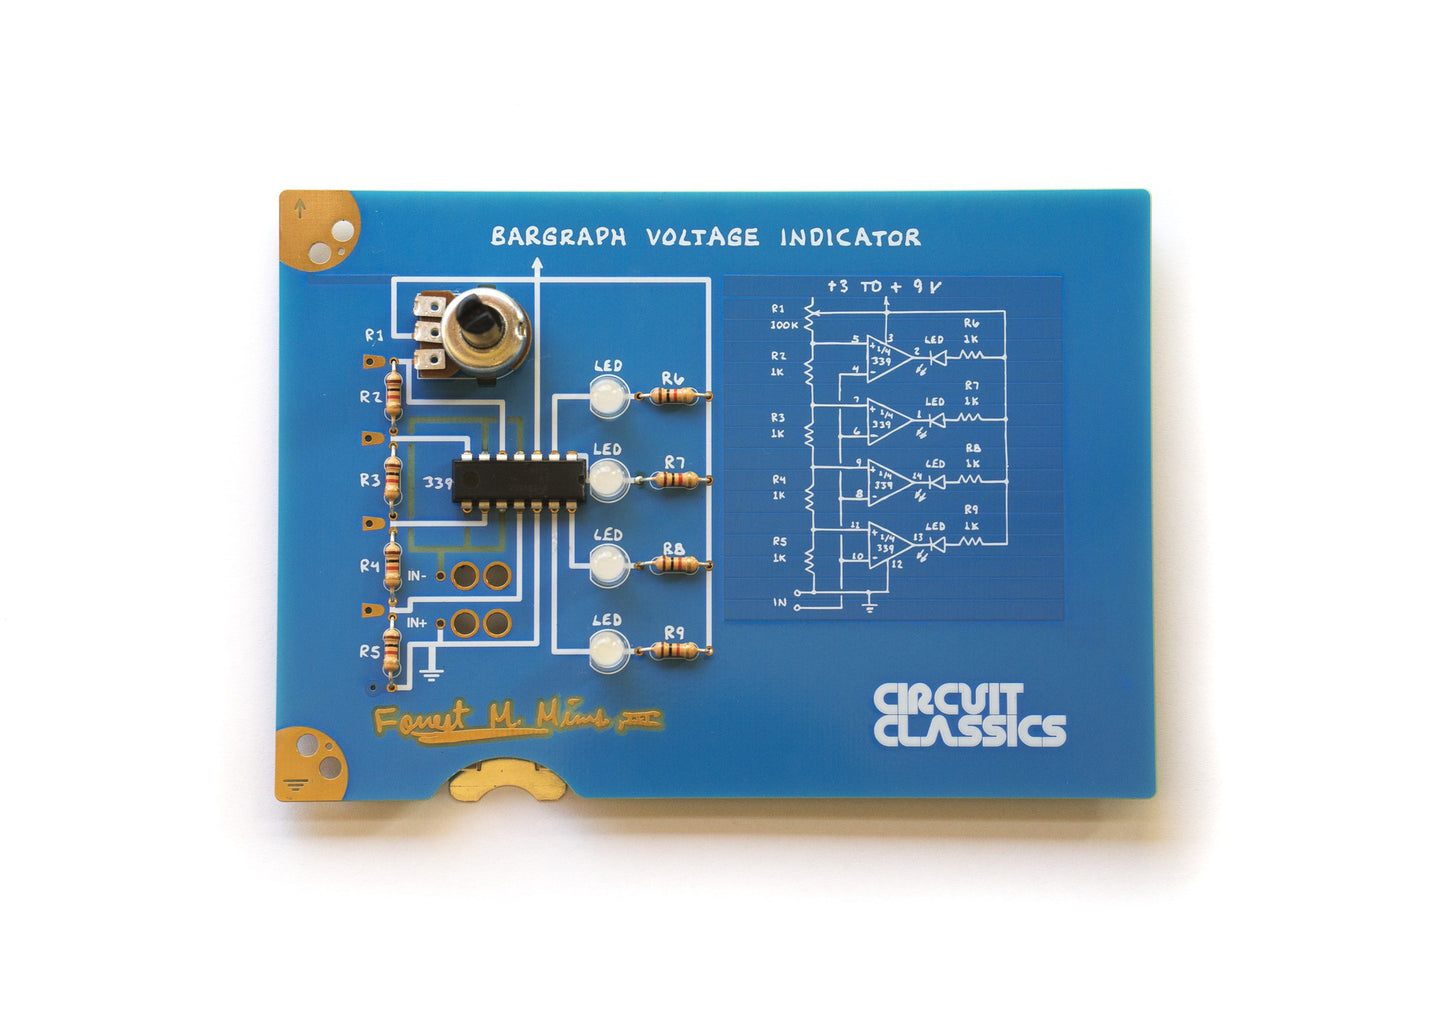 Circuit Classics - Bargraph Voltage Indicator